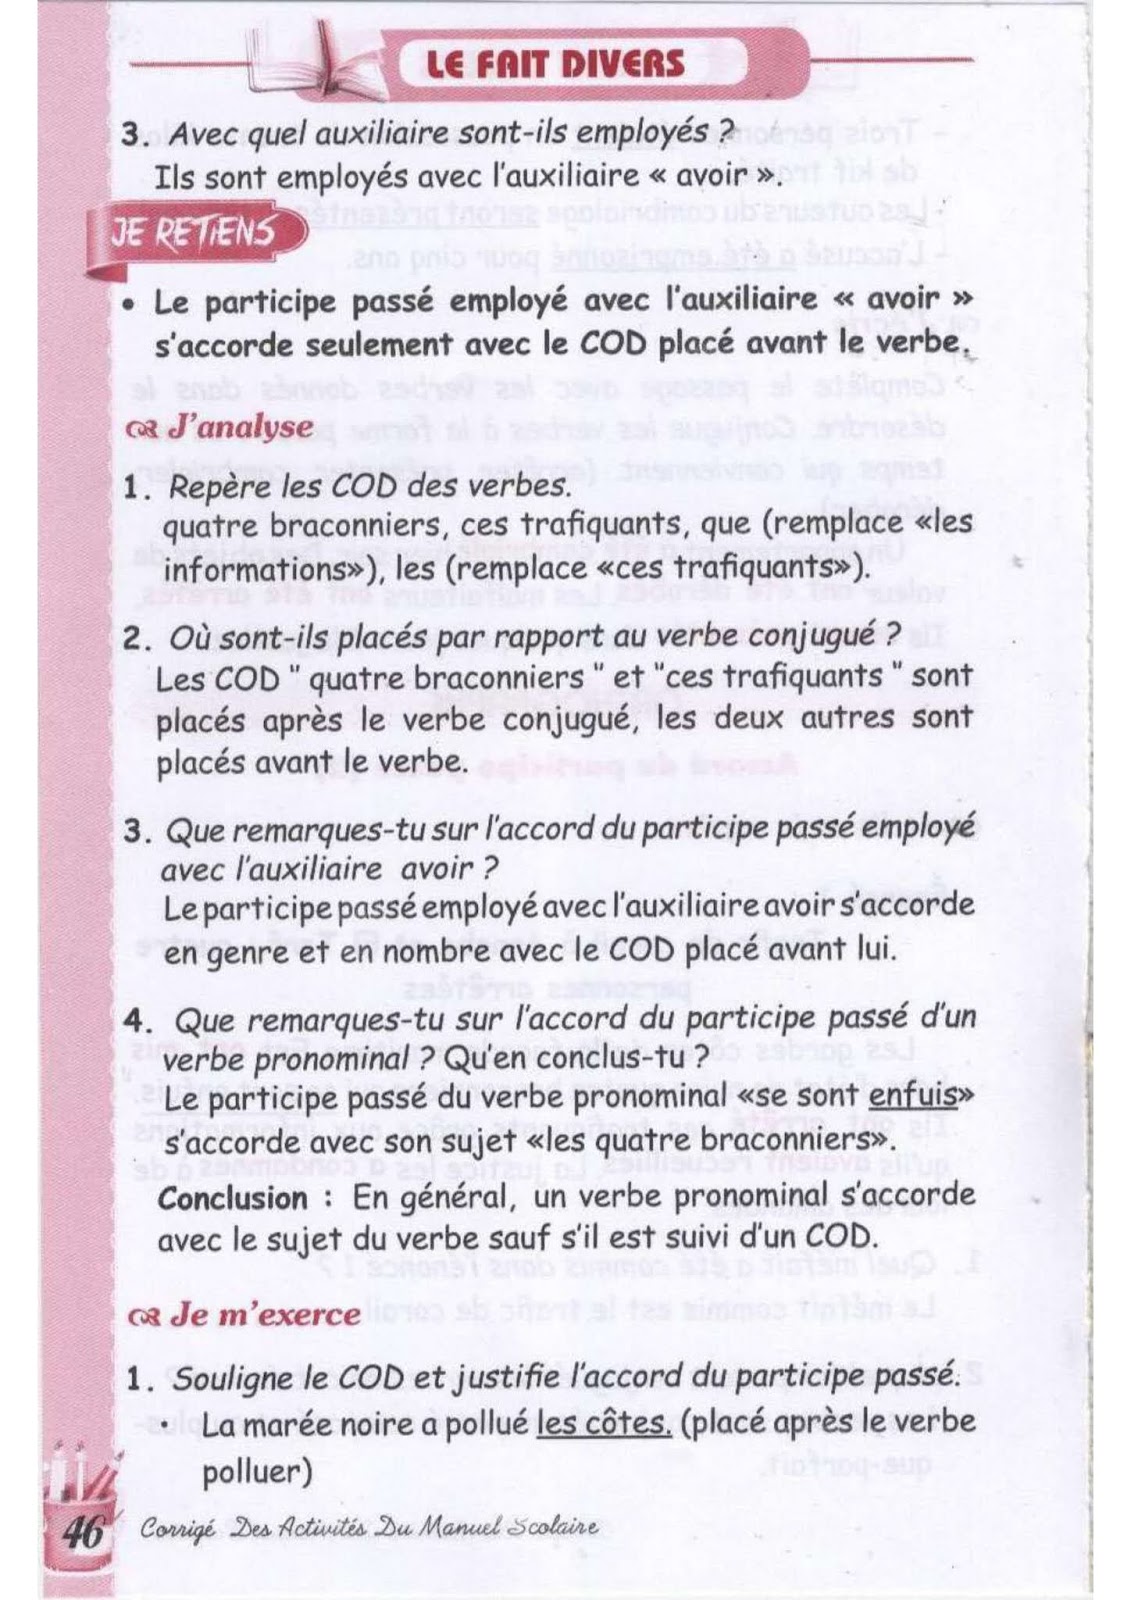 حل تمارين صفحة 44 الفرنسية للسنة الثالثة متوسط - الجيل الثاني